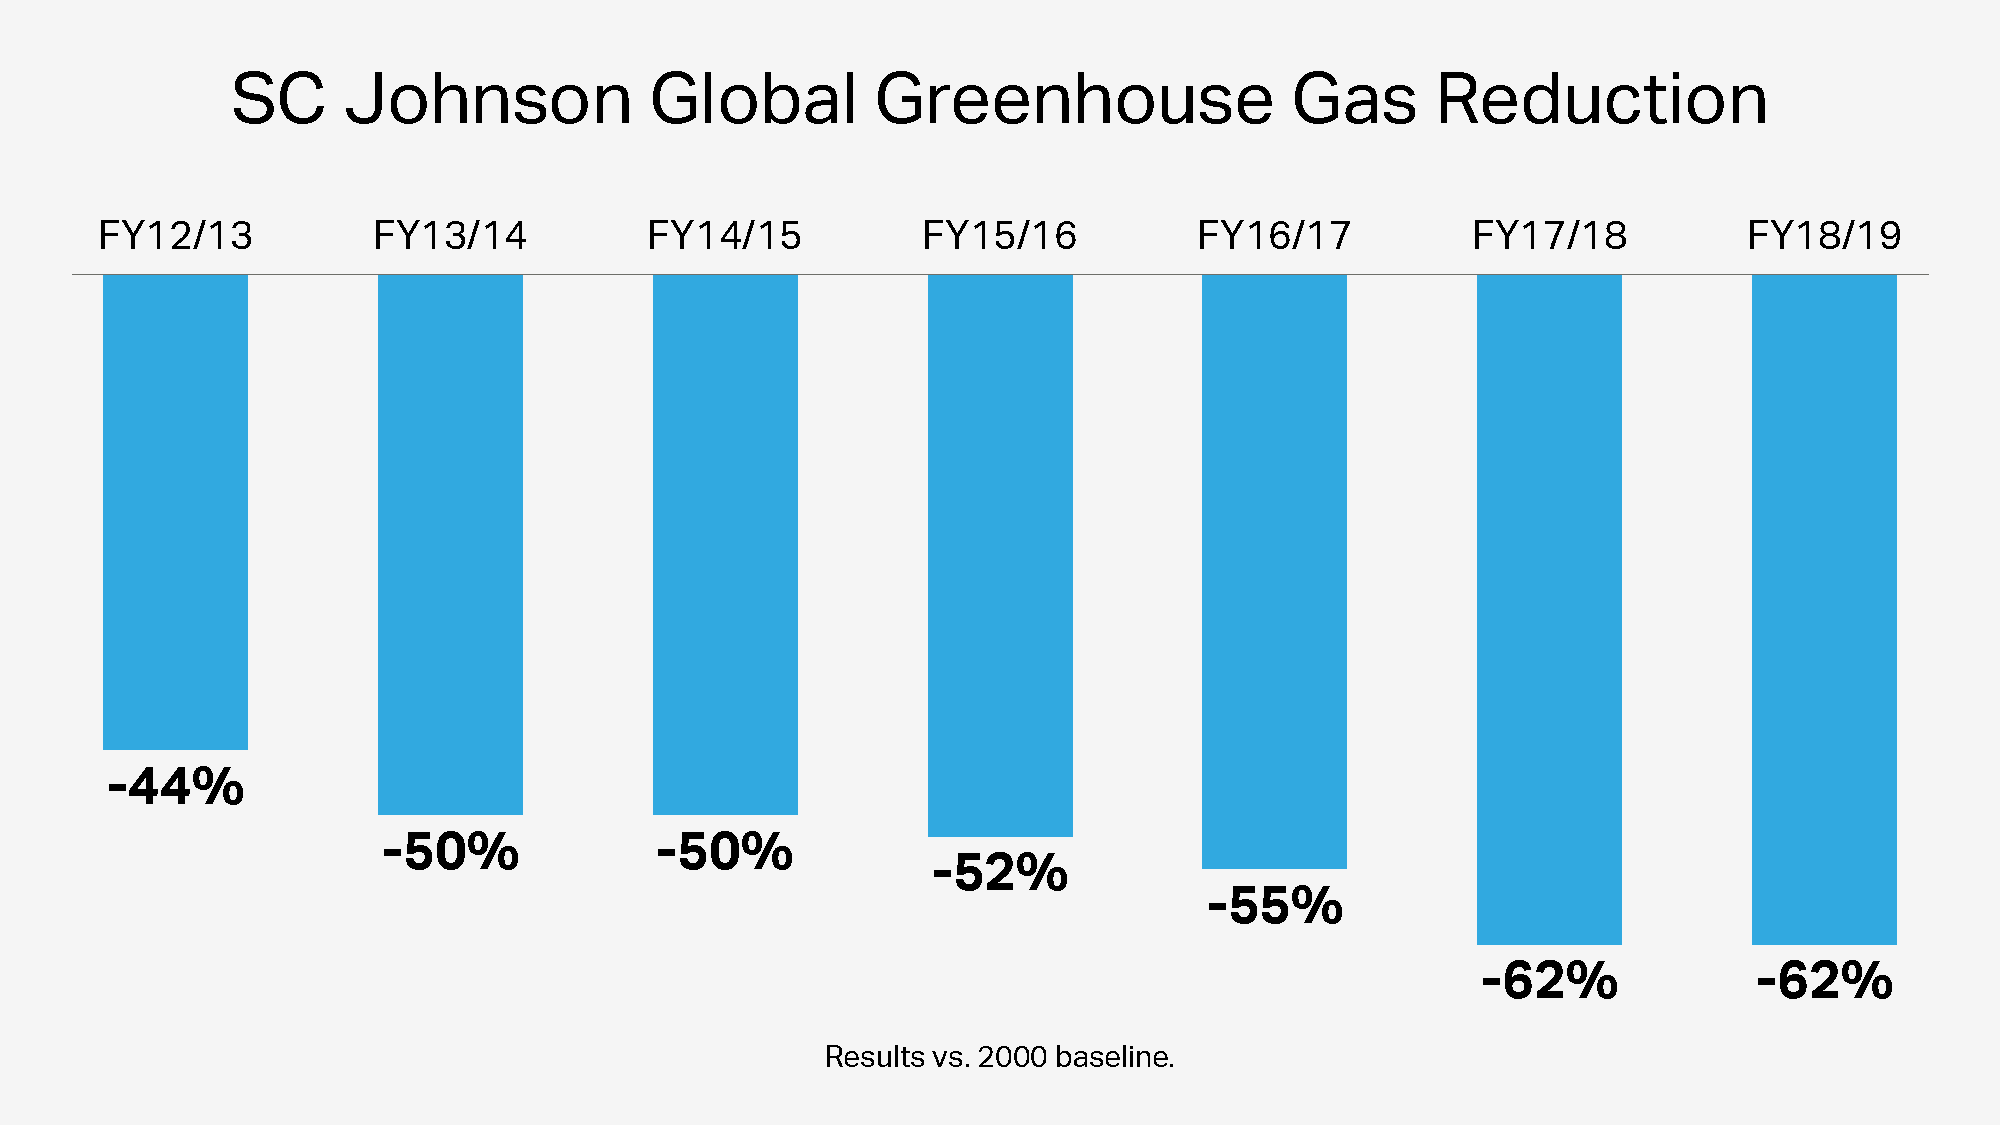 Reducción global de gas de efecto invernadero de SC Johnson a lo largo de los años